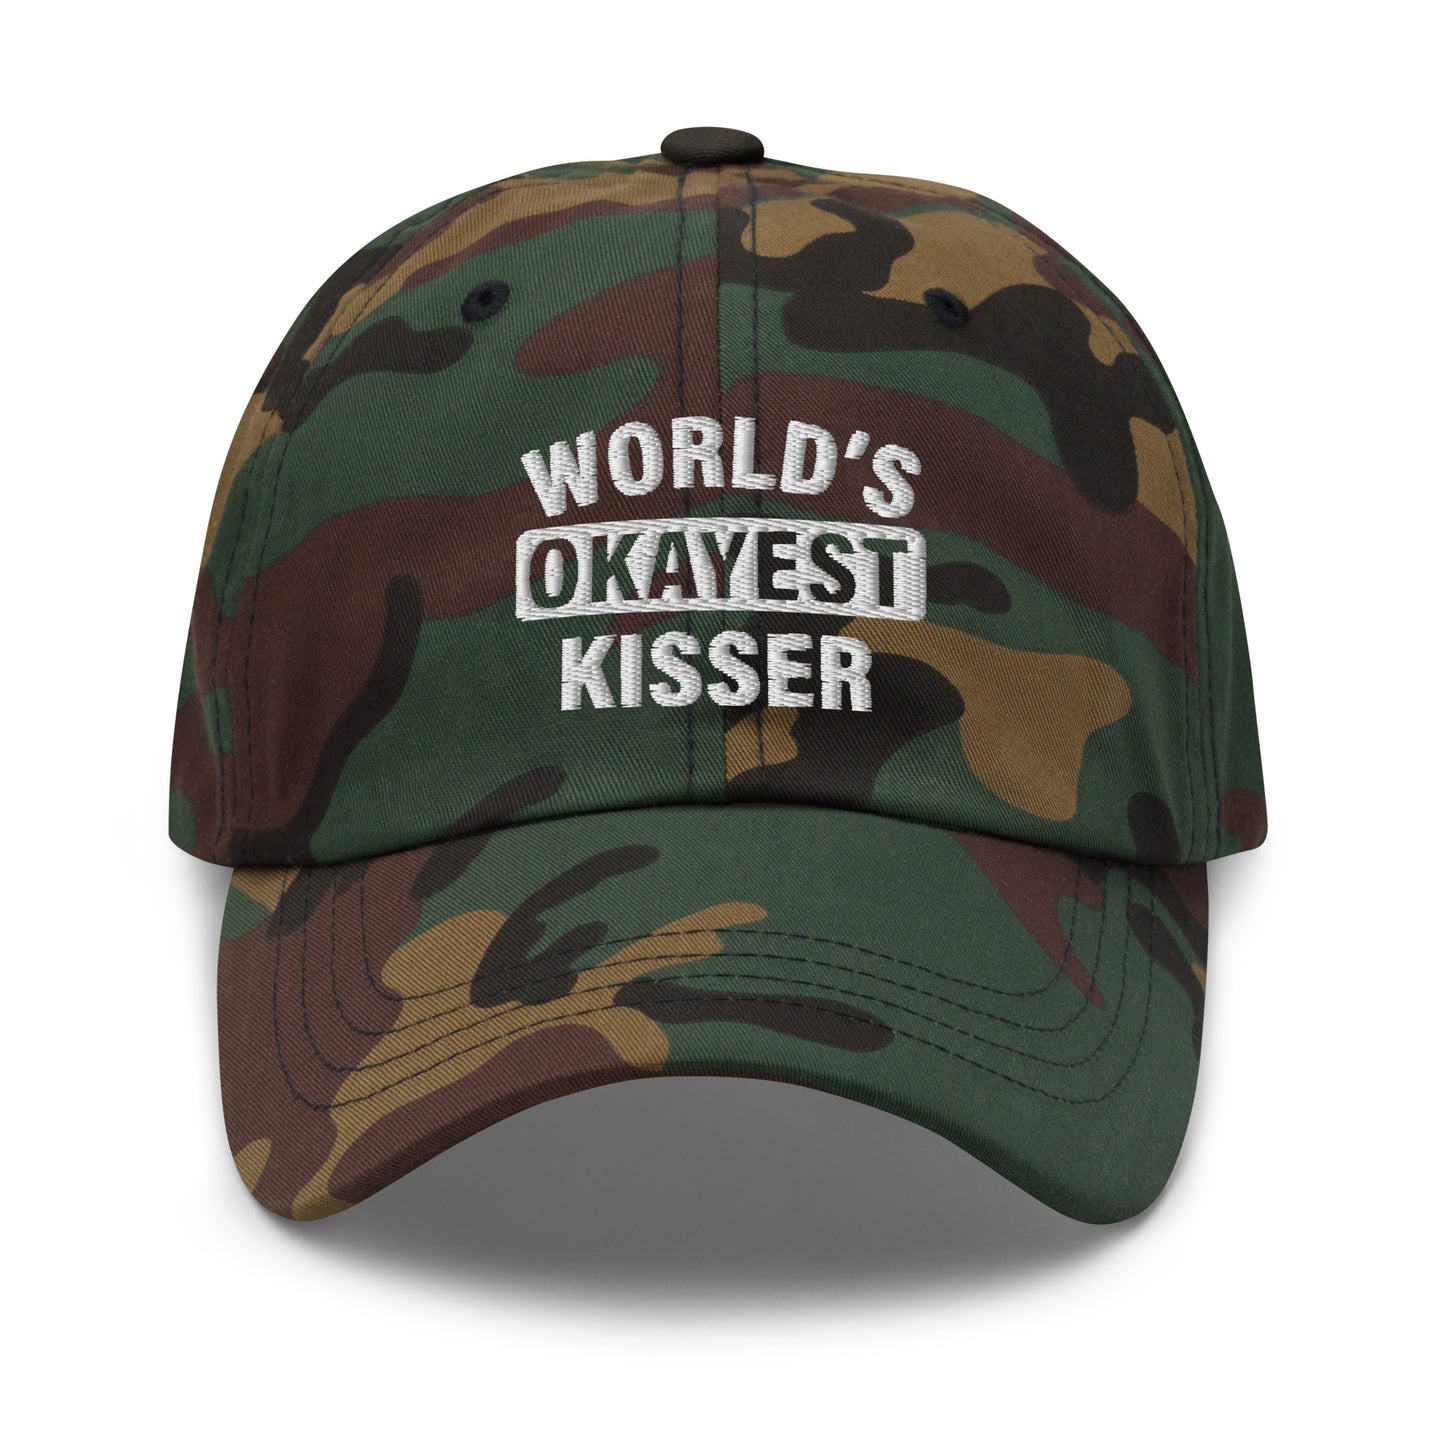 World's Okayest Kisser hat